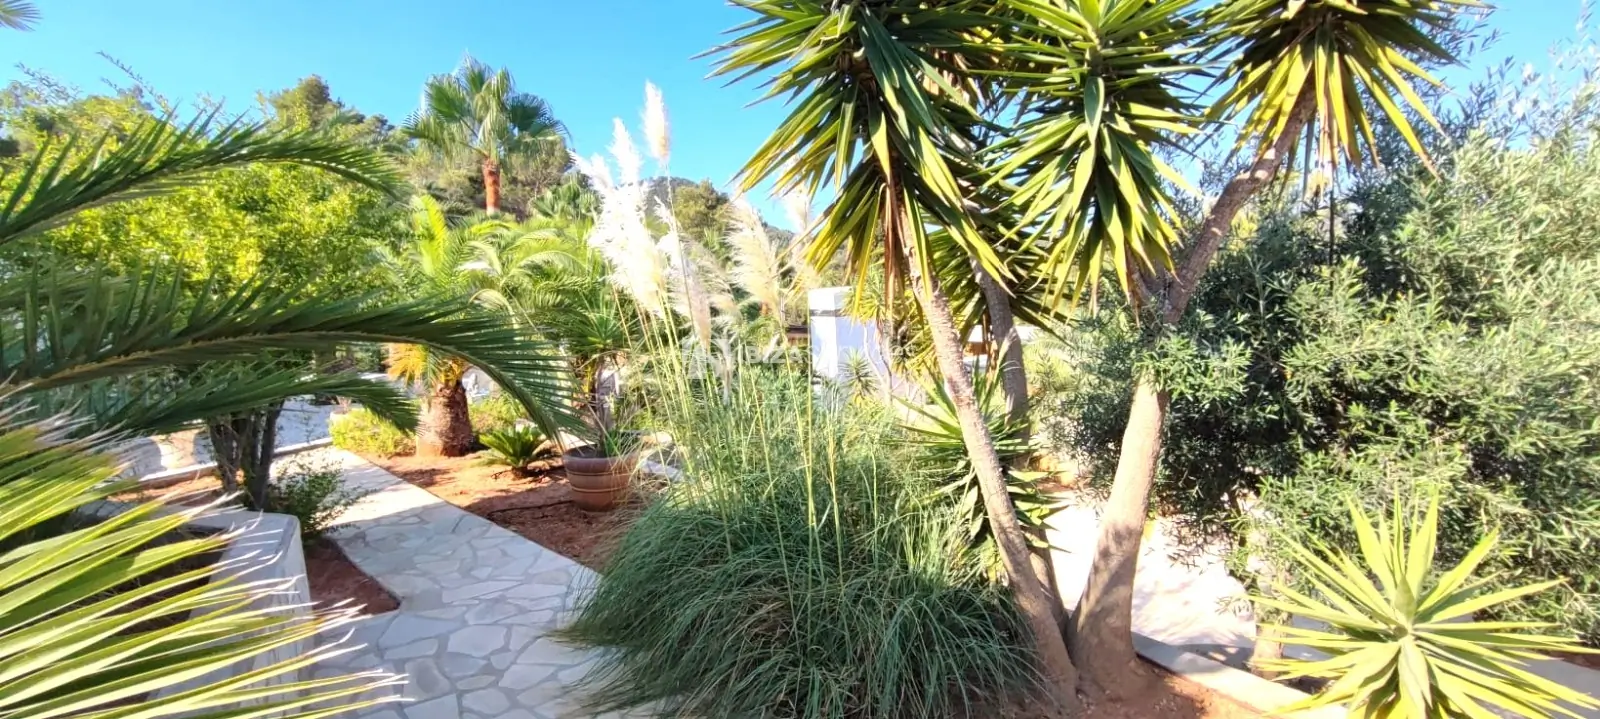 Finca reformada con licencia turistica y jardin tropical cerca de Cala Tarida para comprar